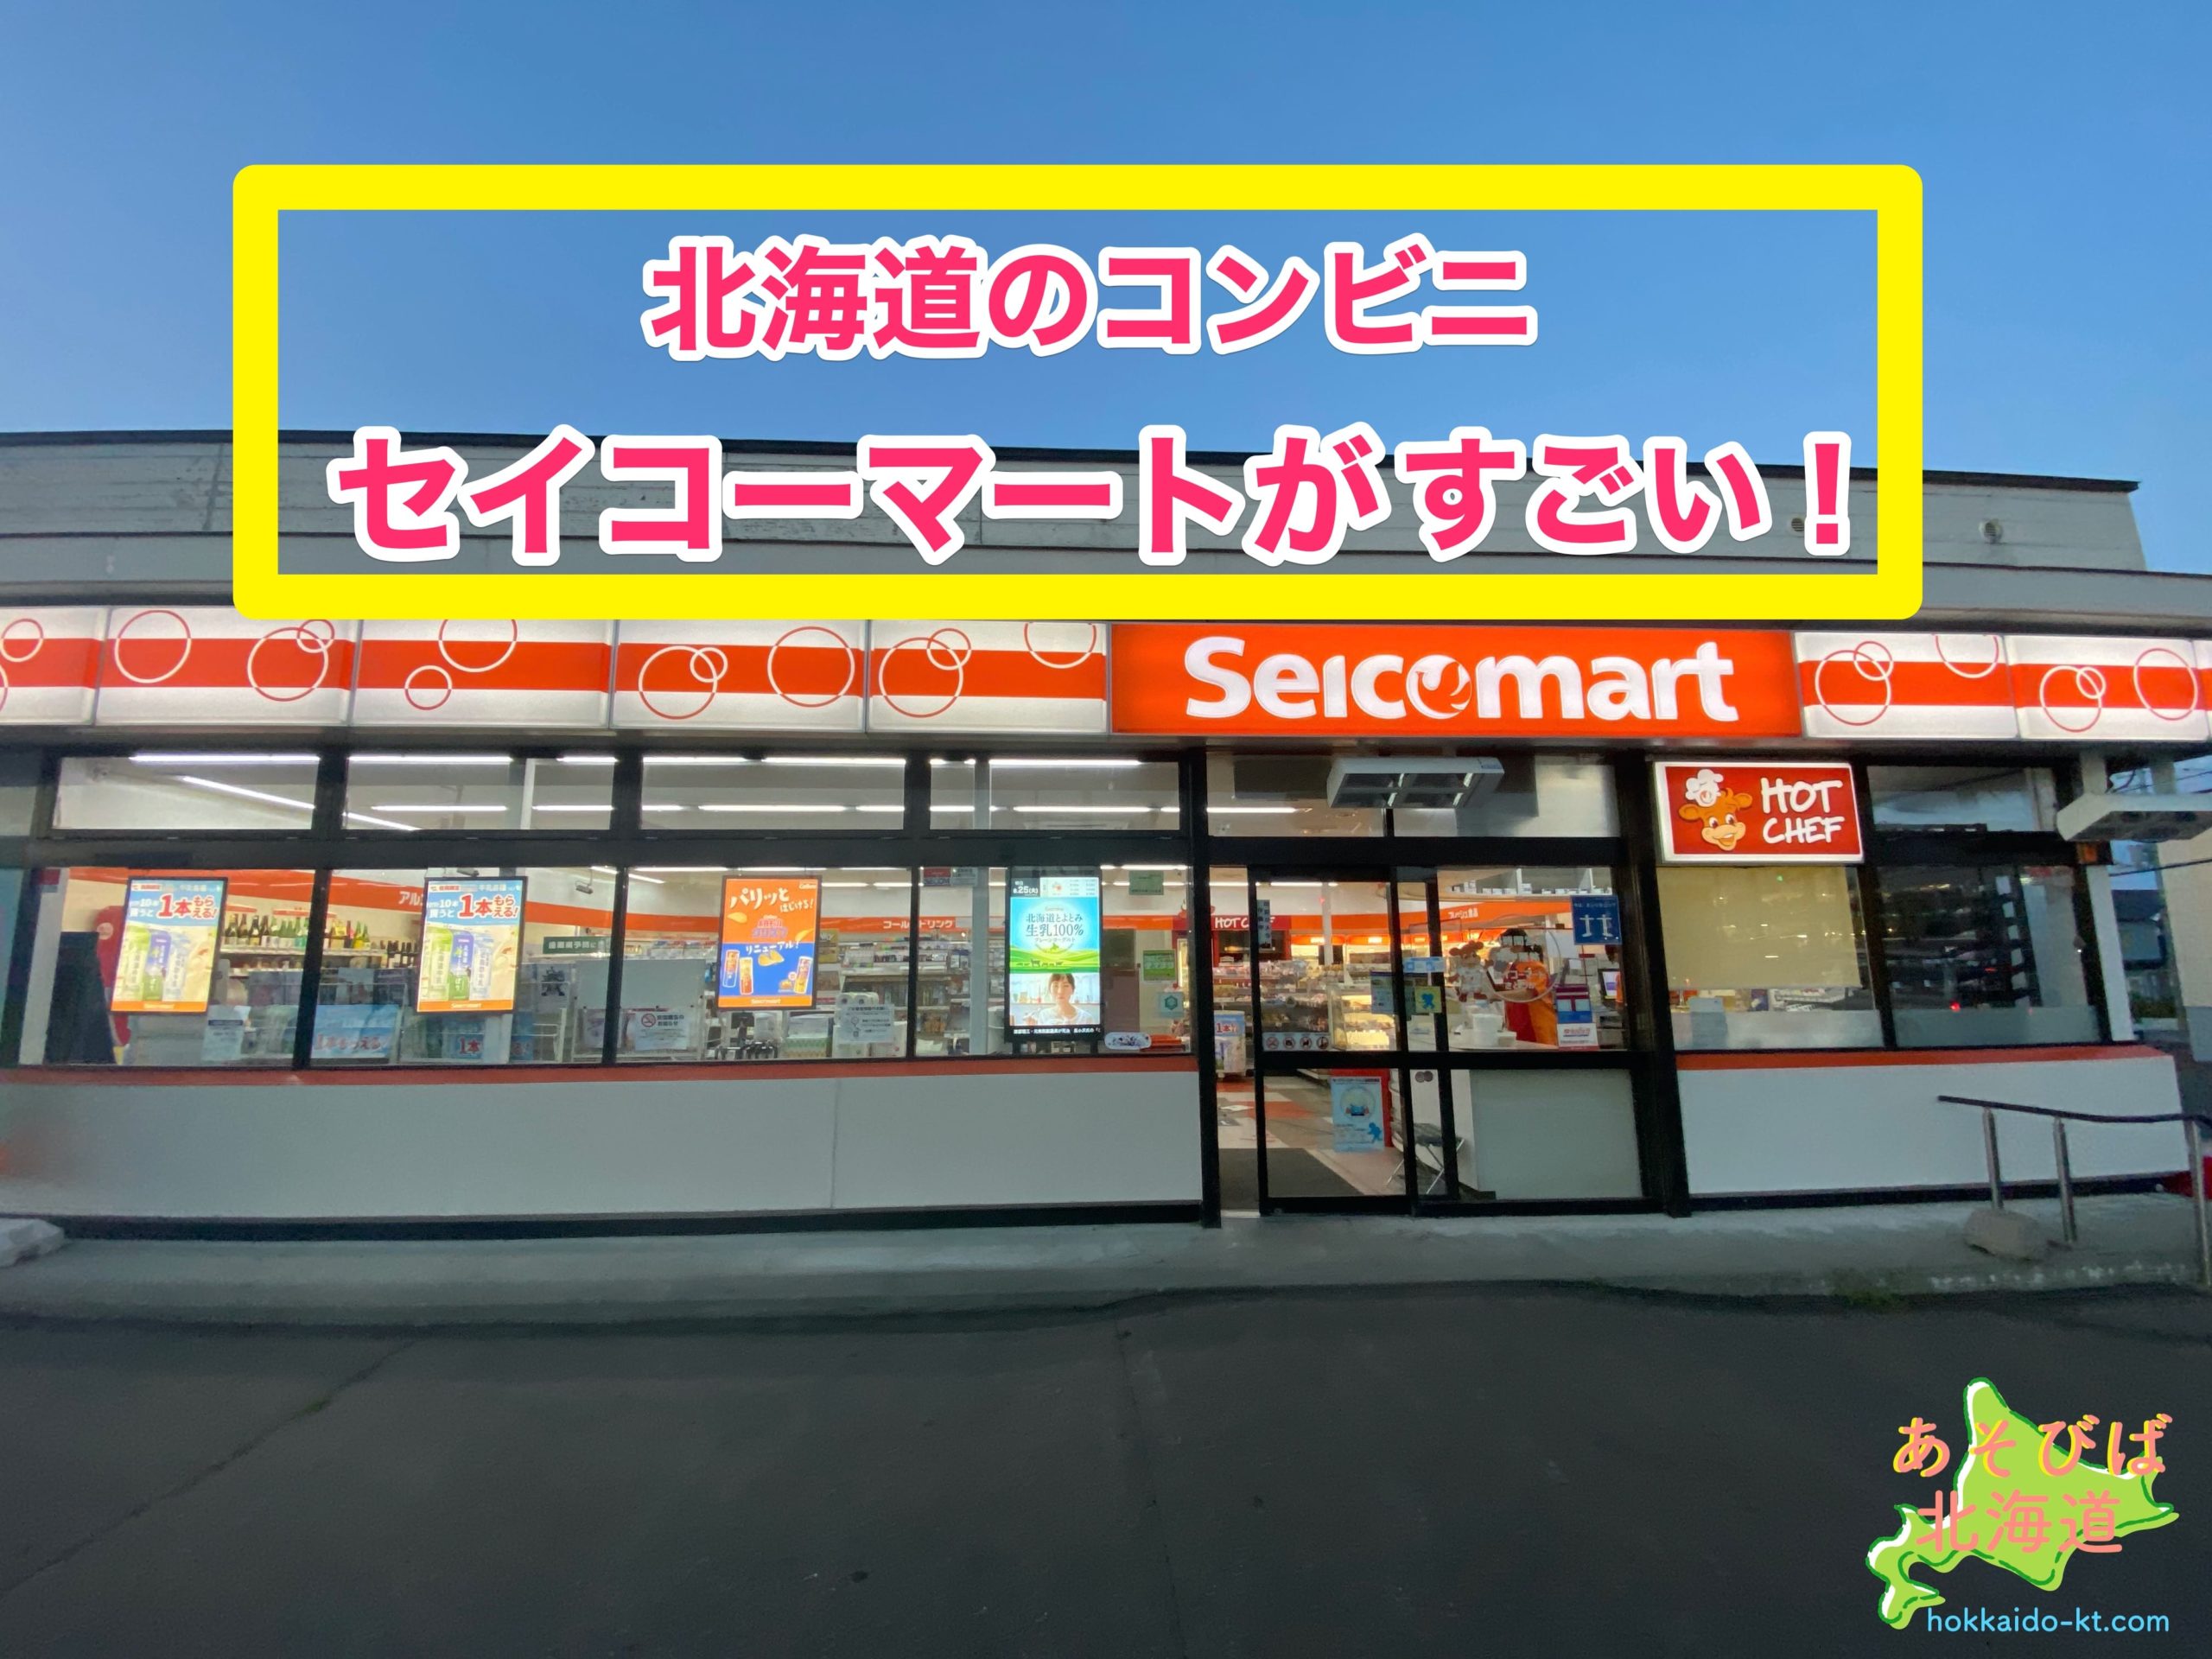 北海道のコンビニ セイコーマート を紹介 ホットシェフとは レジ袋が無料 おすすめは あそびば北海道